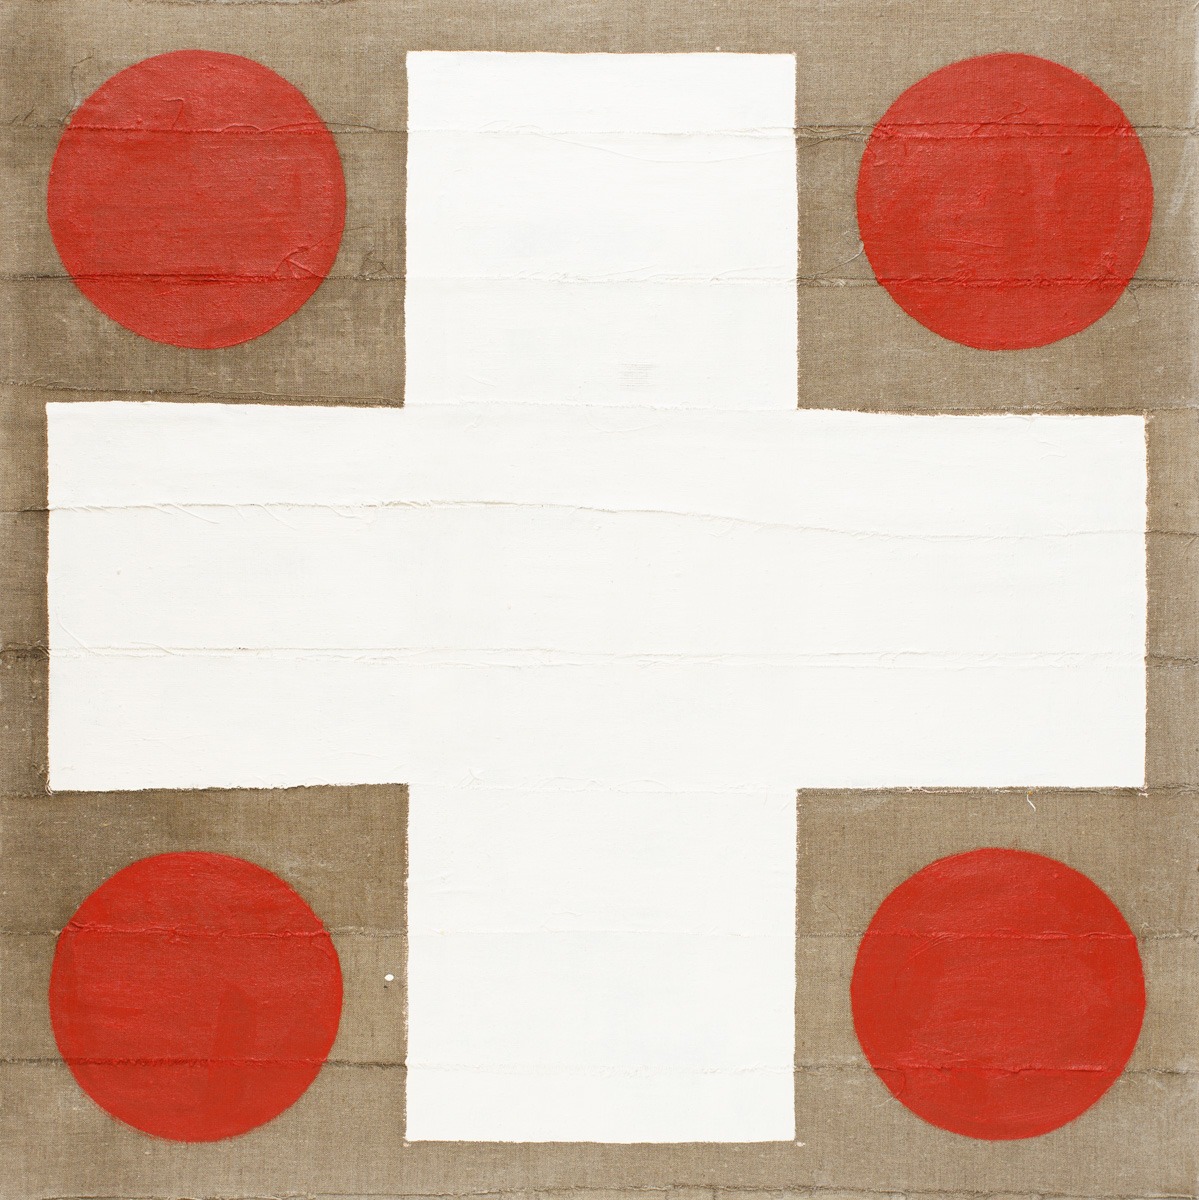 Du cote de chez Malevich - Andrzej Folfas - geometryczna abstrakcja z czerwienią i bielą na surowym płótnie